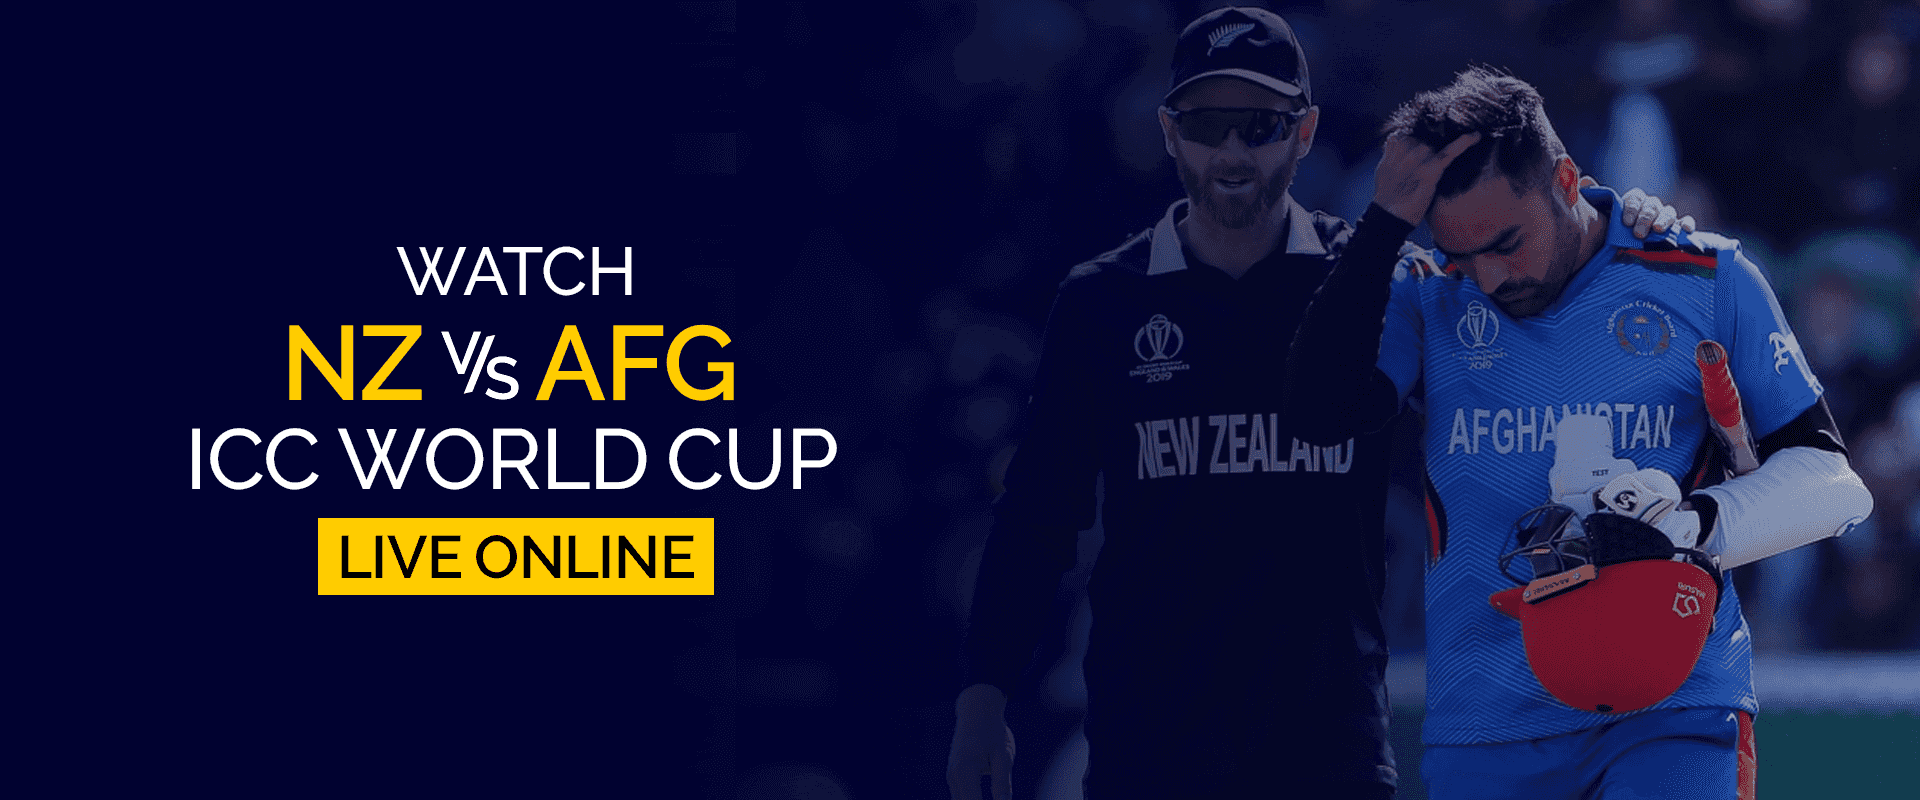 Se Nya Zeeland vs Afghanistan ICC World Cup live online